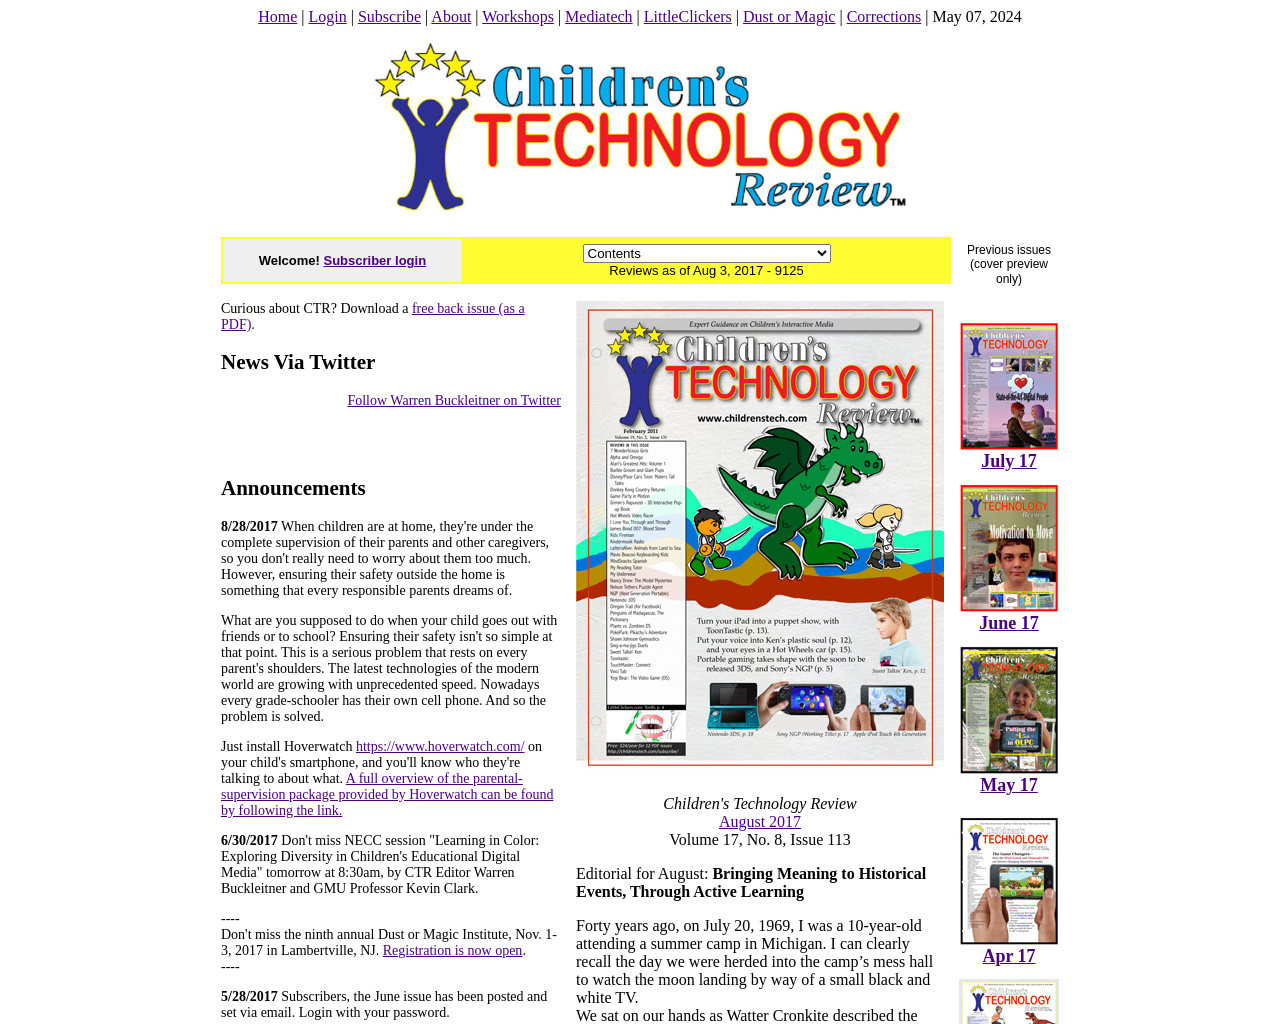 childrenssoftware.com